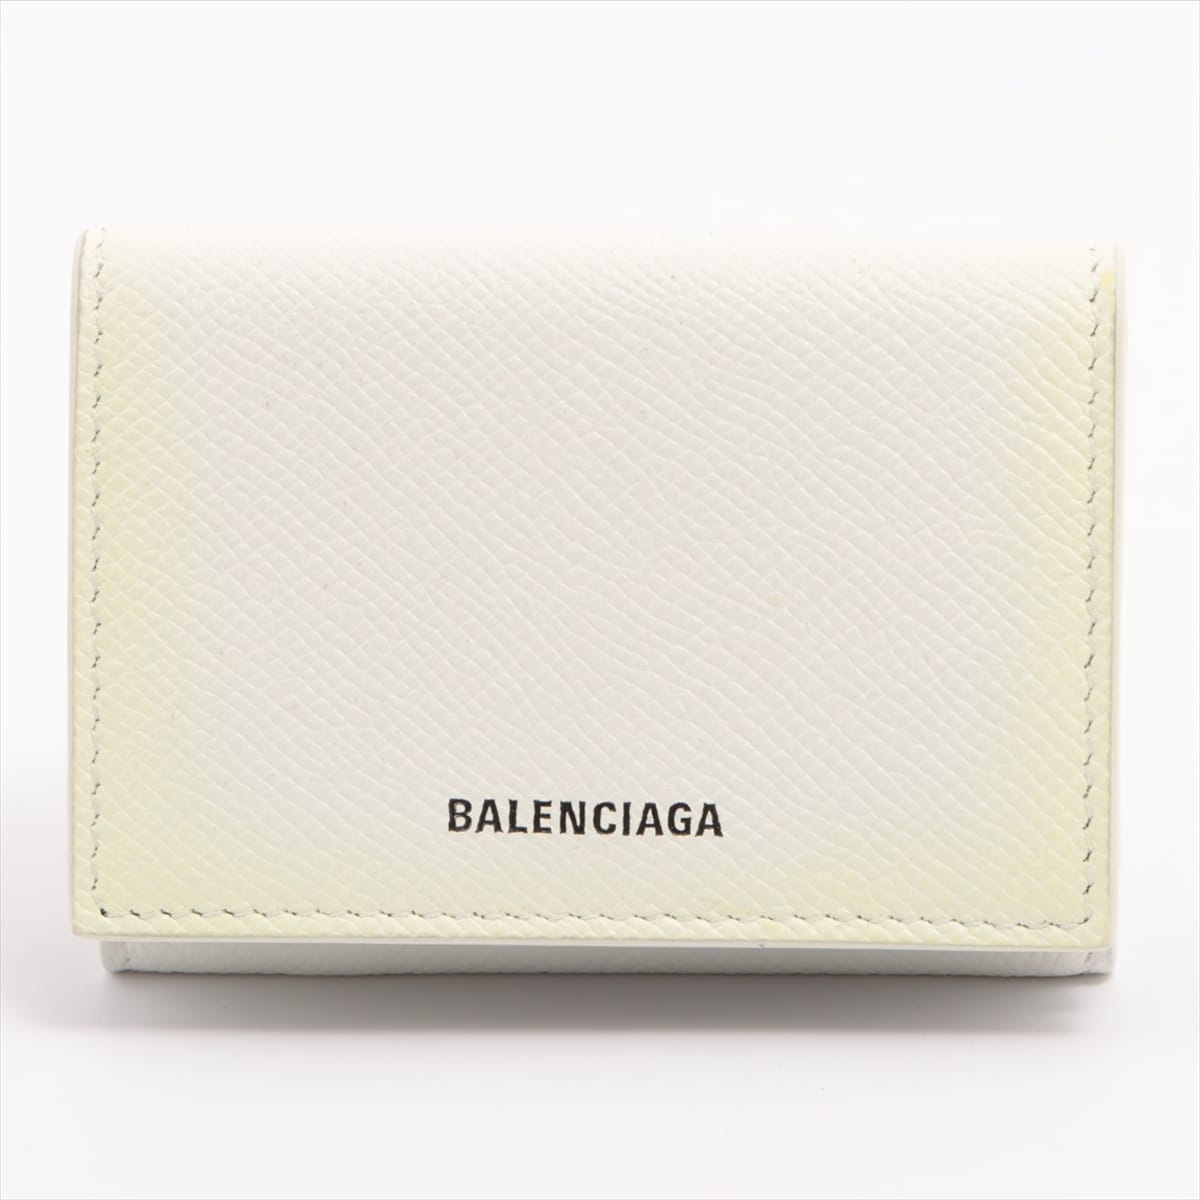 Balenciaga Logo 558208 Leather Wallet White